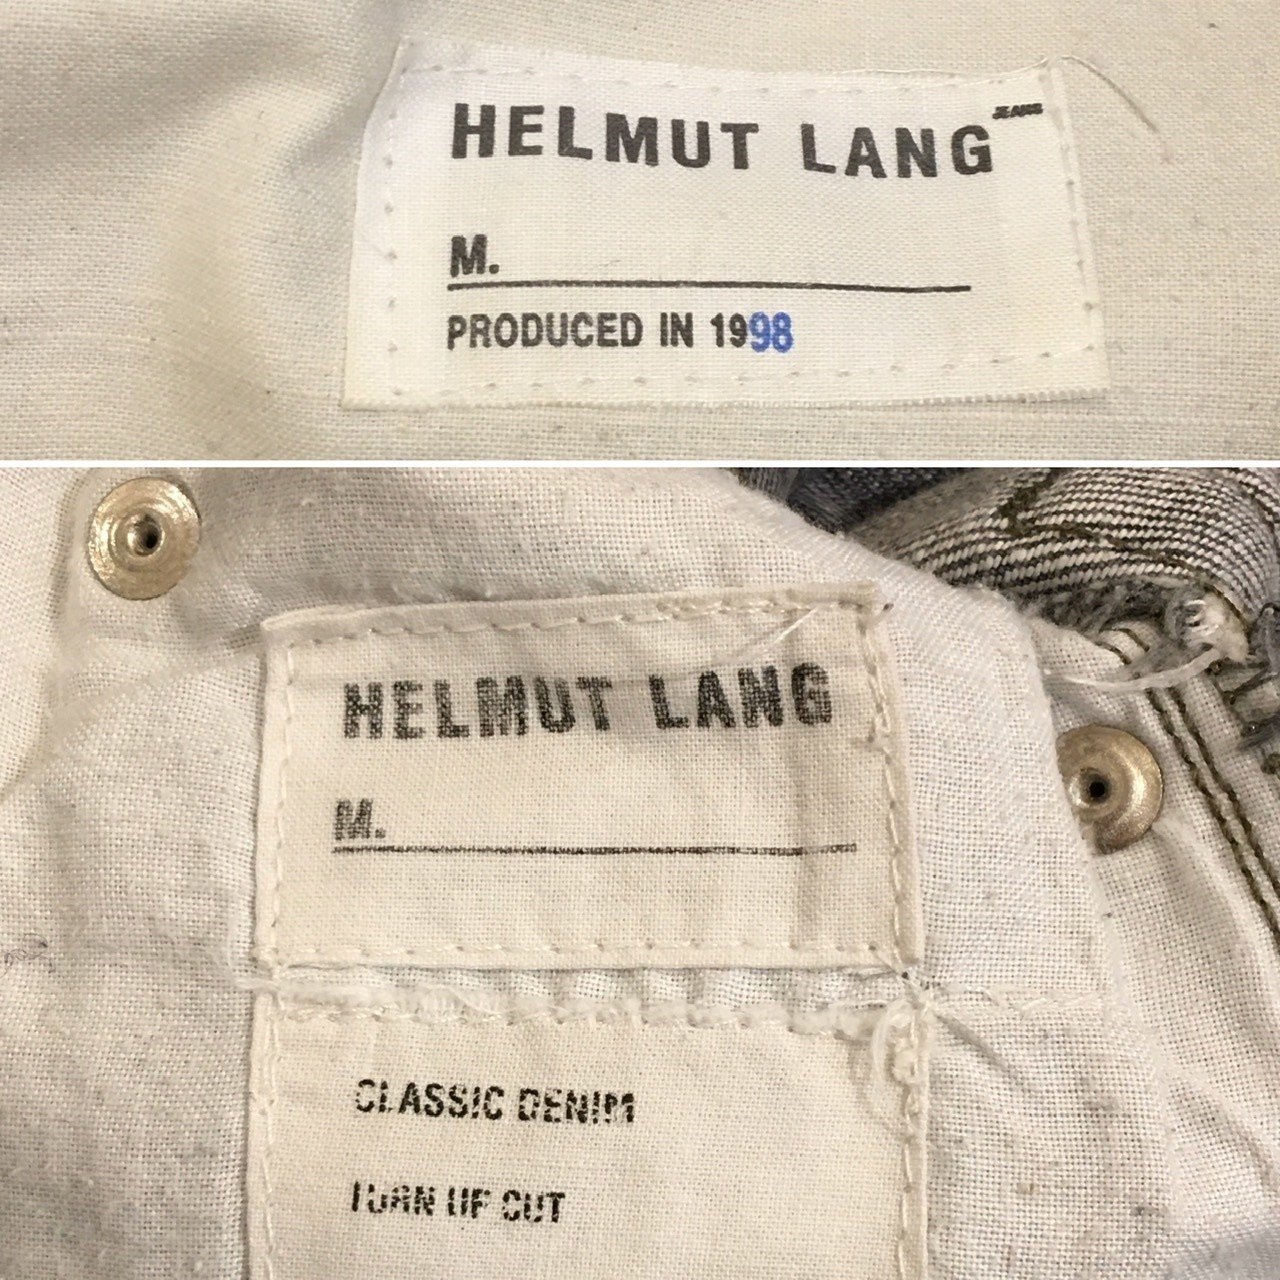 HELMUT LANG ヘルムートラング90s-mid00sジーンズのざっくり年代判別 